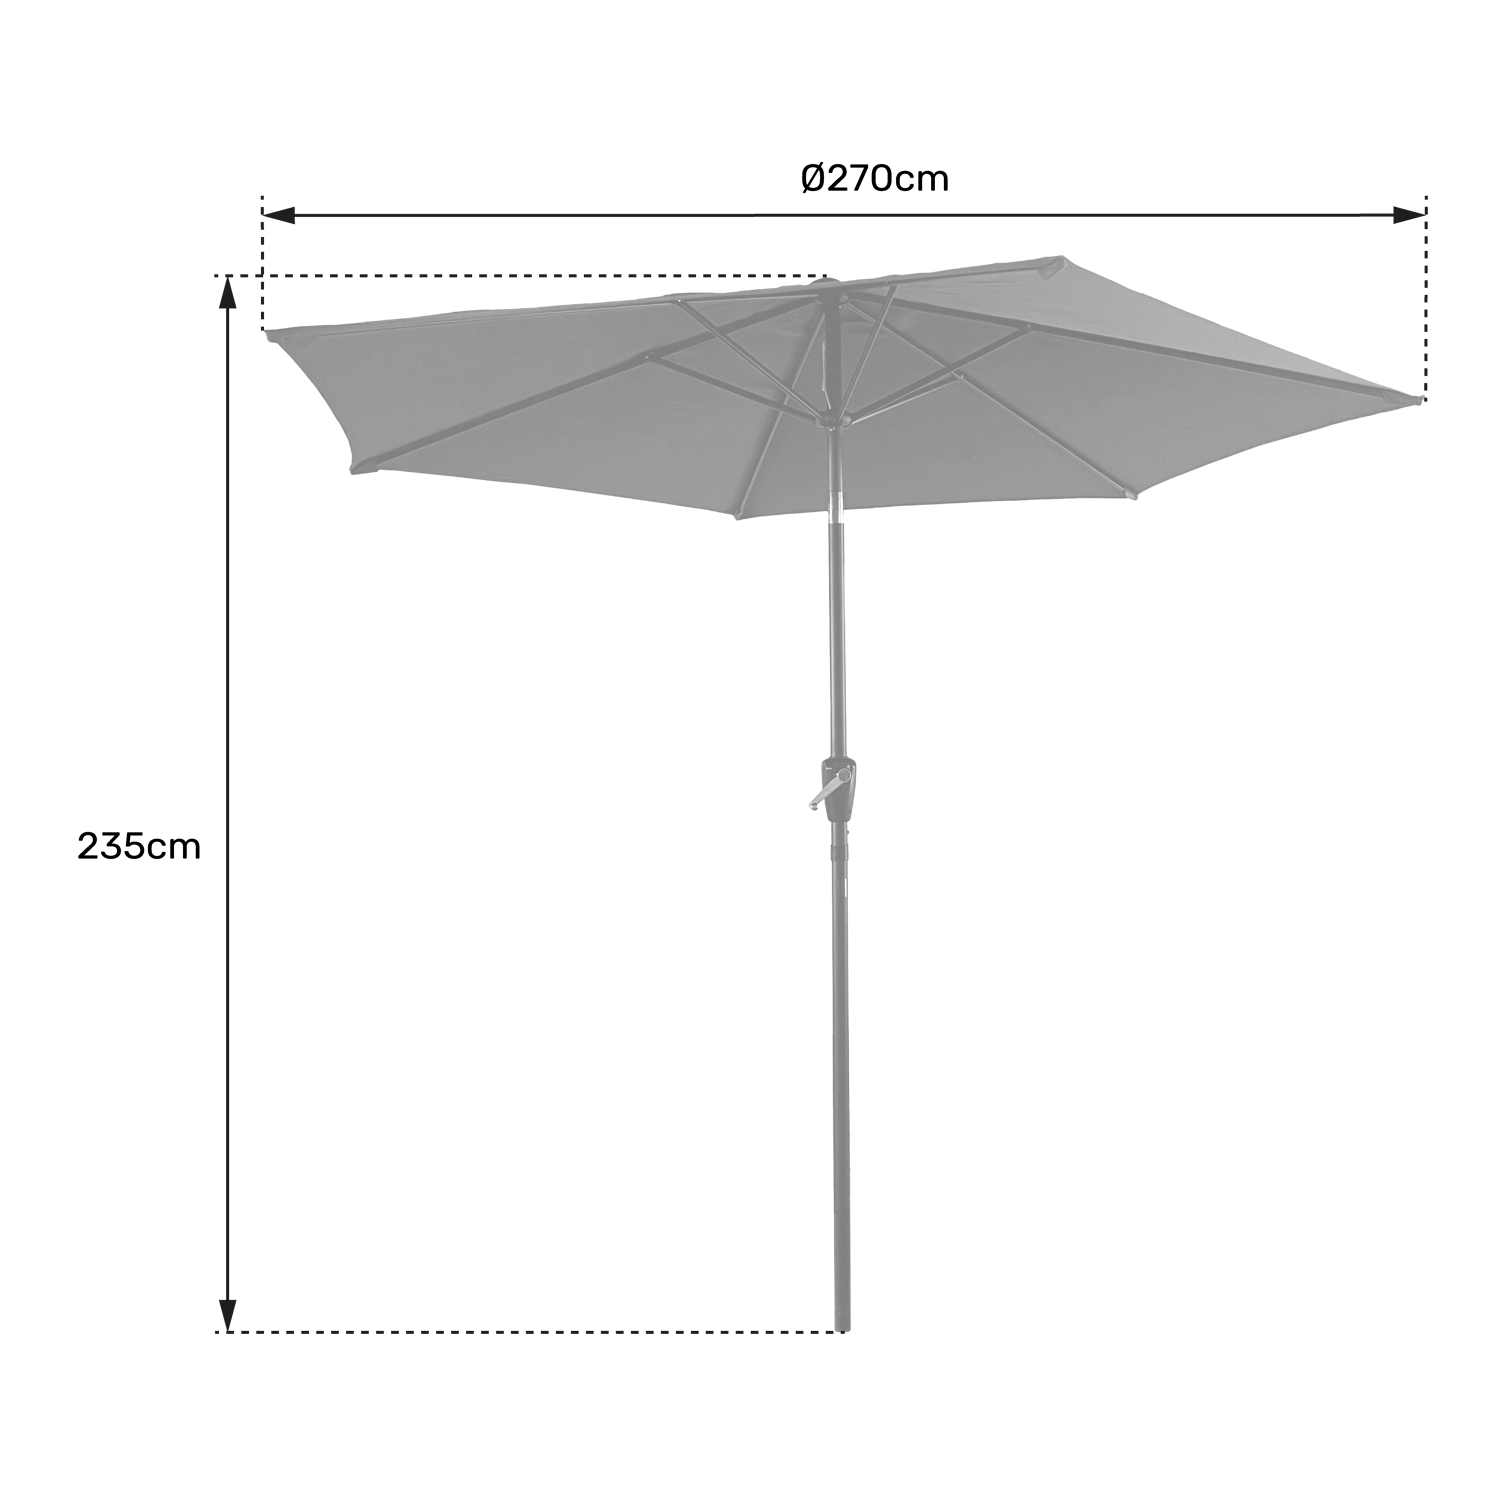 HAPUNA guarda-chuva redondo direito de 2,70m de diâmetro bege